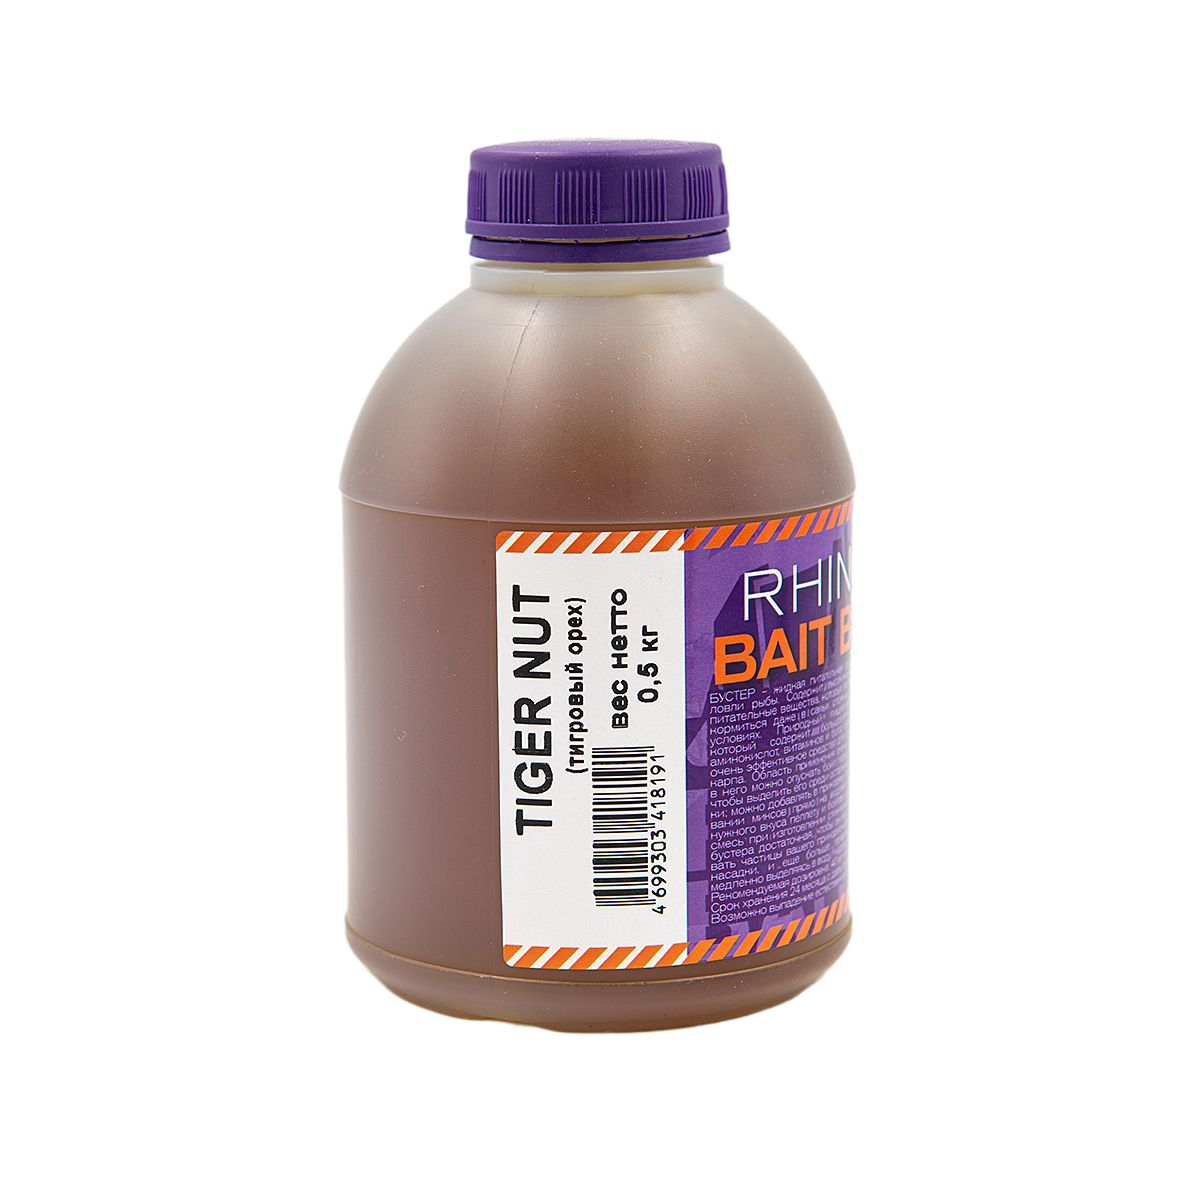 RHINO BAITS Bait Booster Liquid Food (жидкое питание) Tiger nut (Тигровый орех), 0,5 л